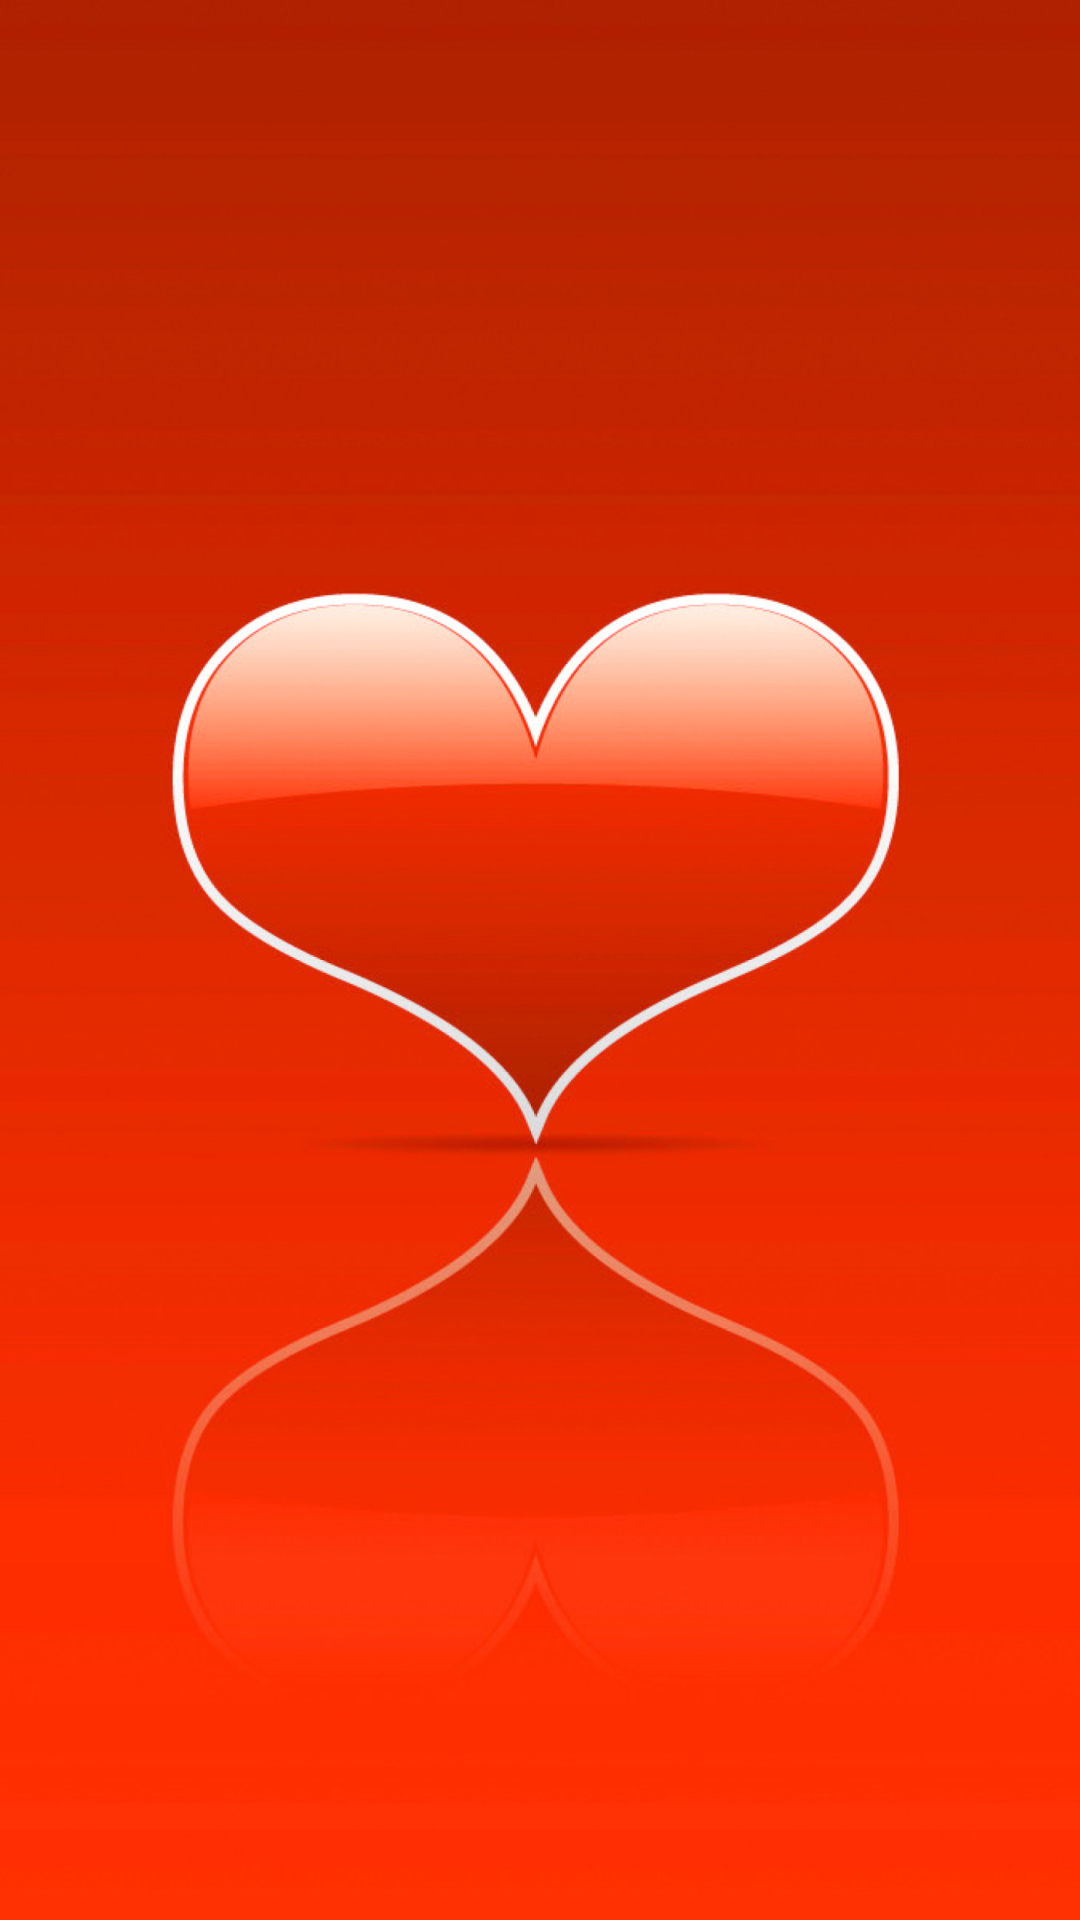 Red Heart wallpaper 1080x1920